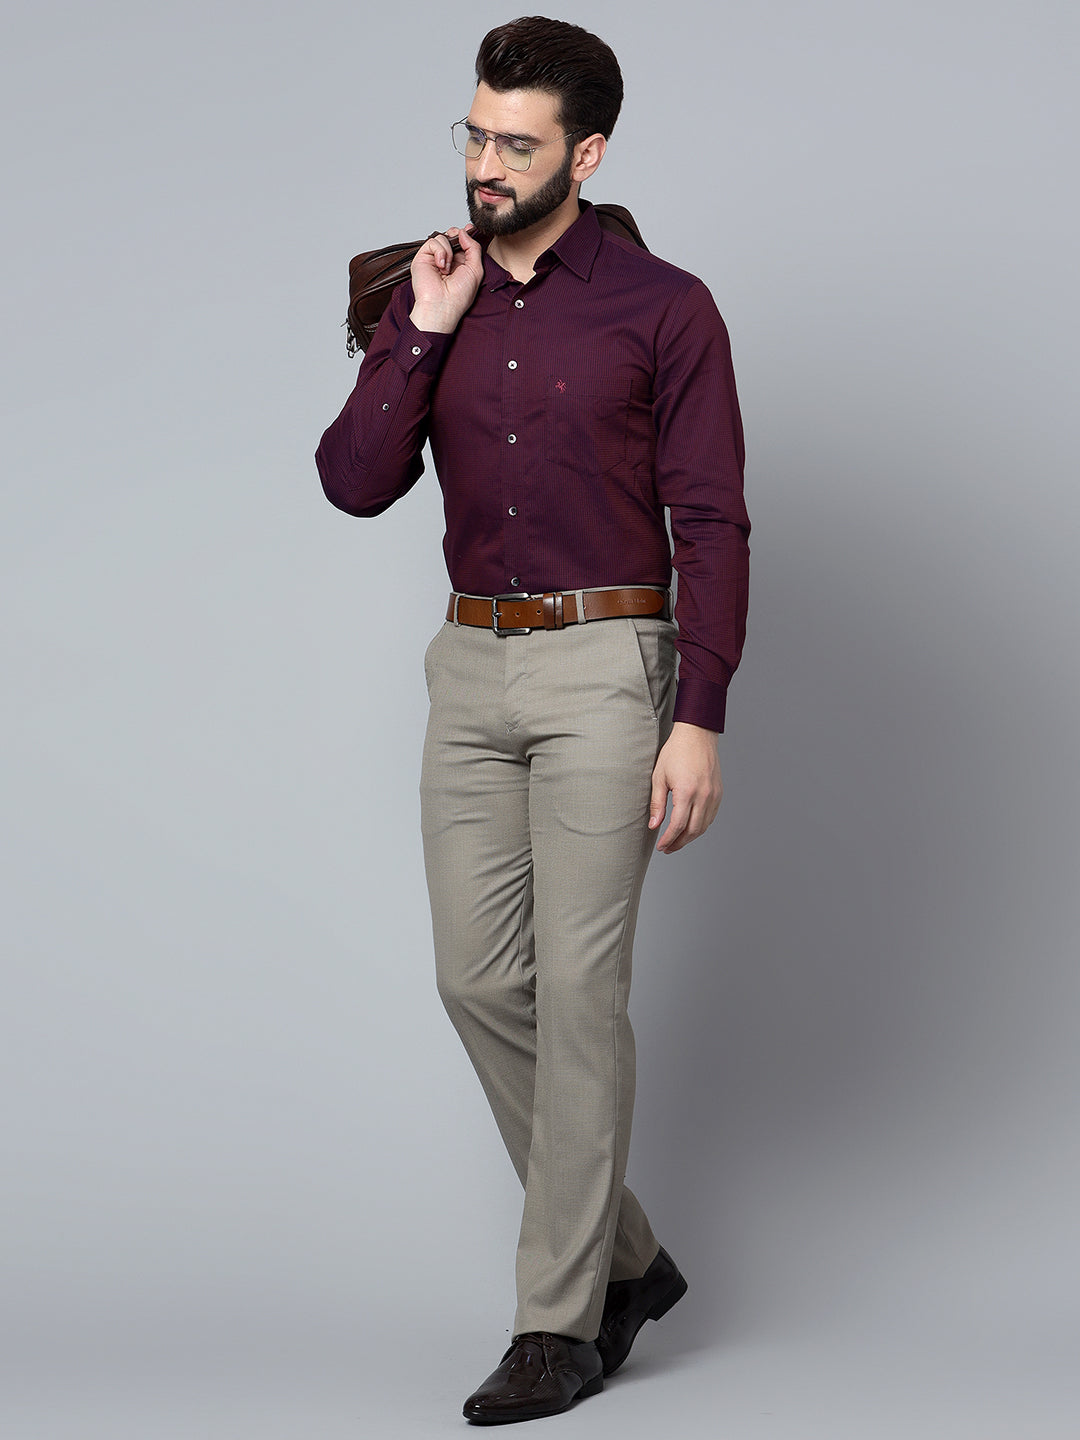 Buy Purple Shirts for Men by Marks  Spencer Online  Ajiocom